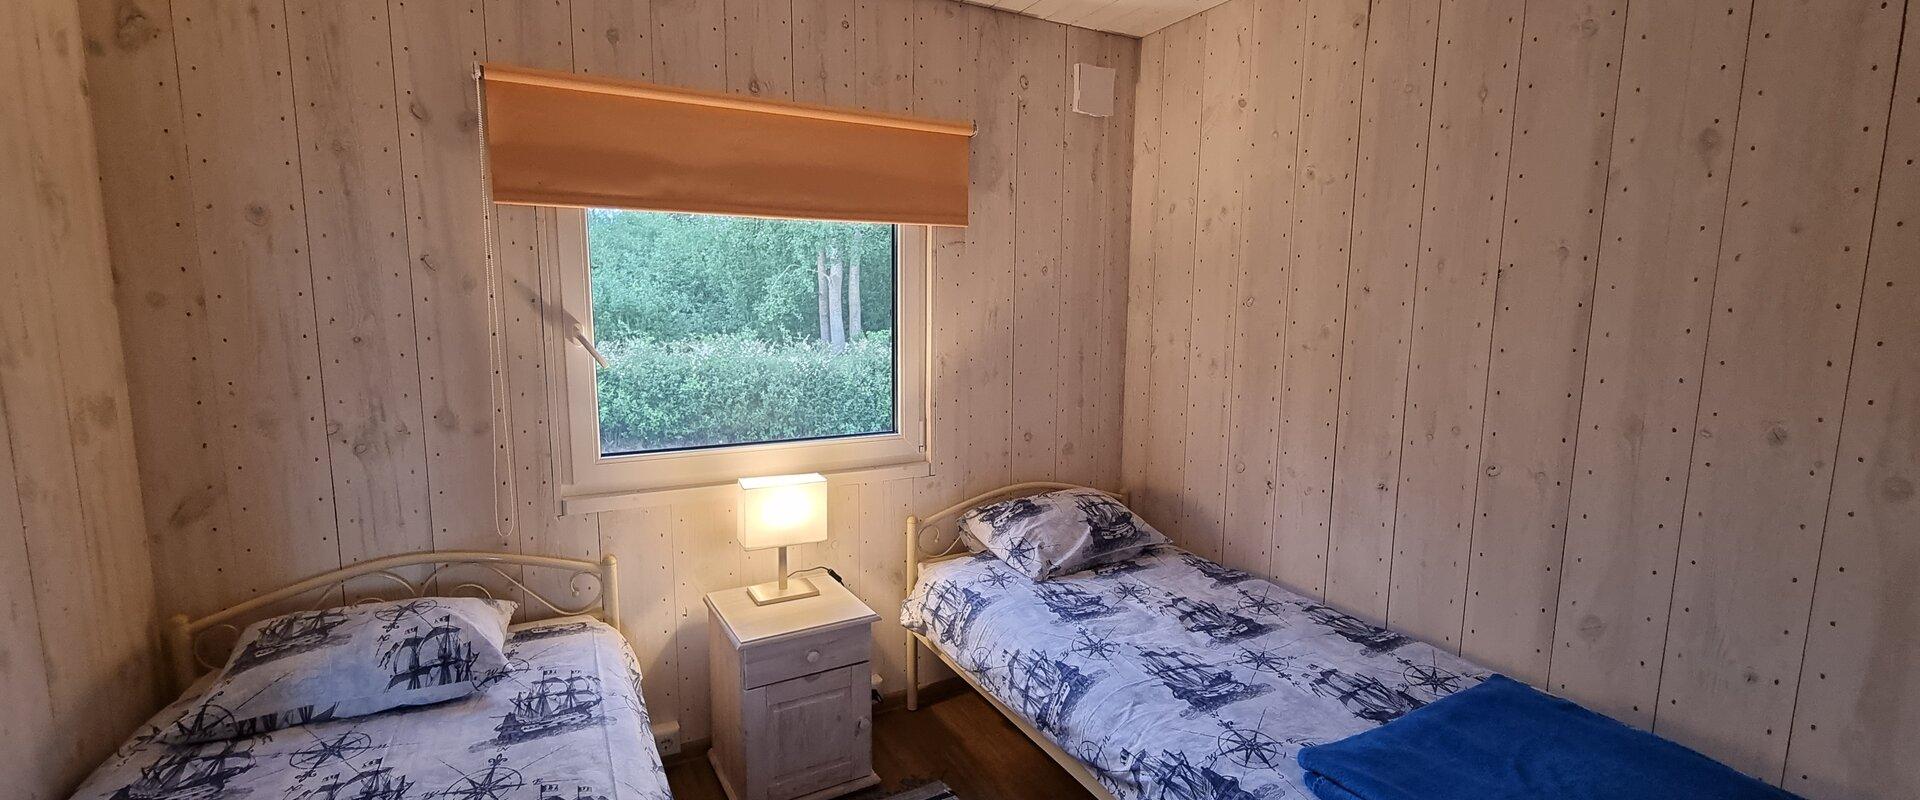 Pildil Jõesuu Turismitalu puhkekeskuse magamistuba